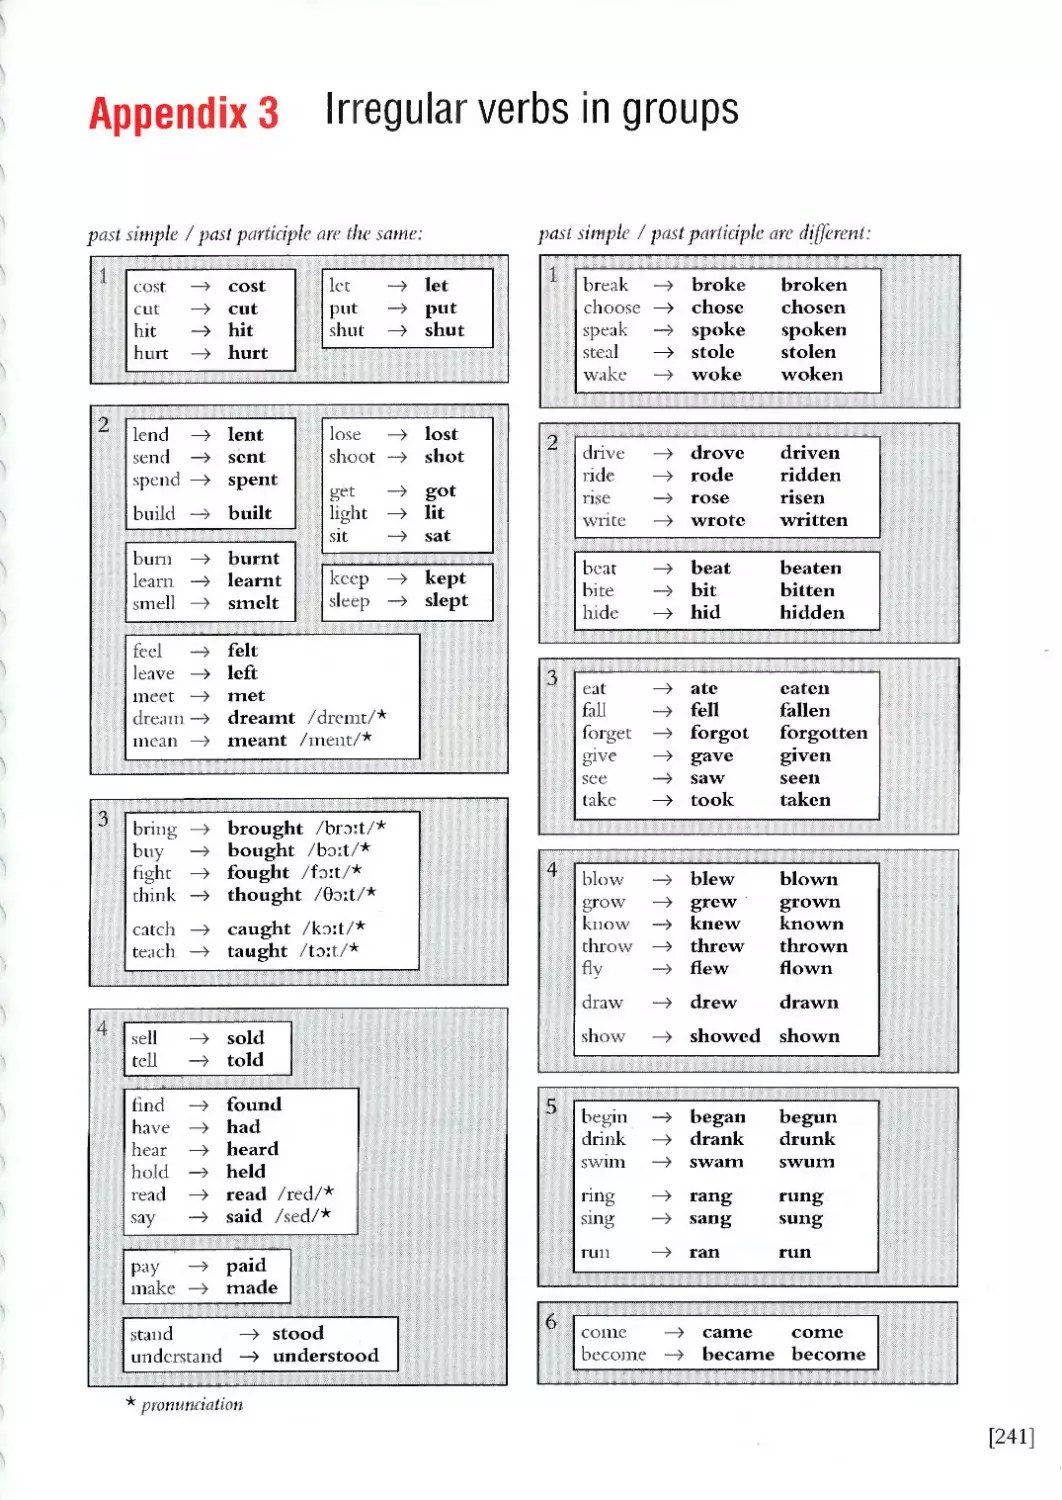 Appendix 3 - Irregular verbs in groups